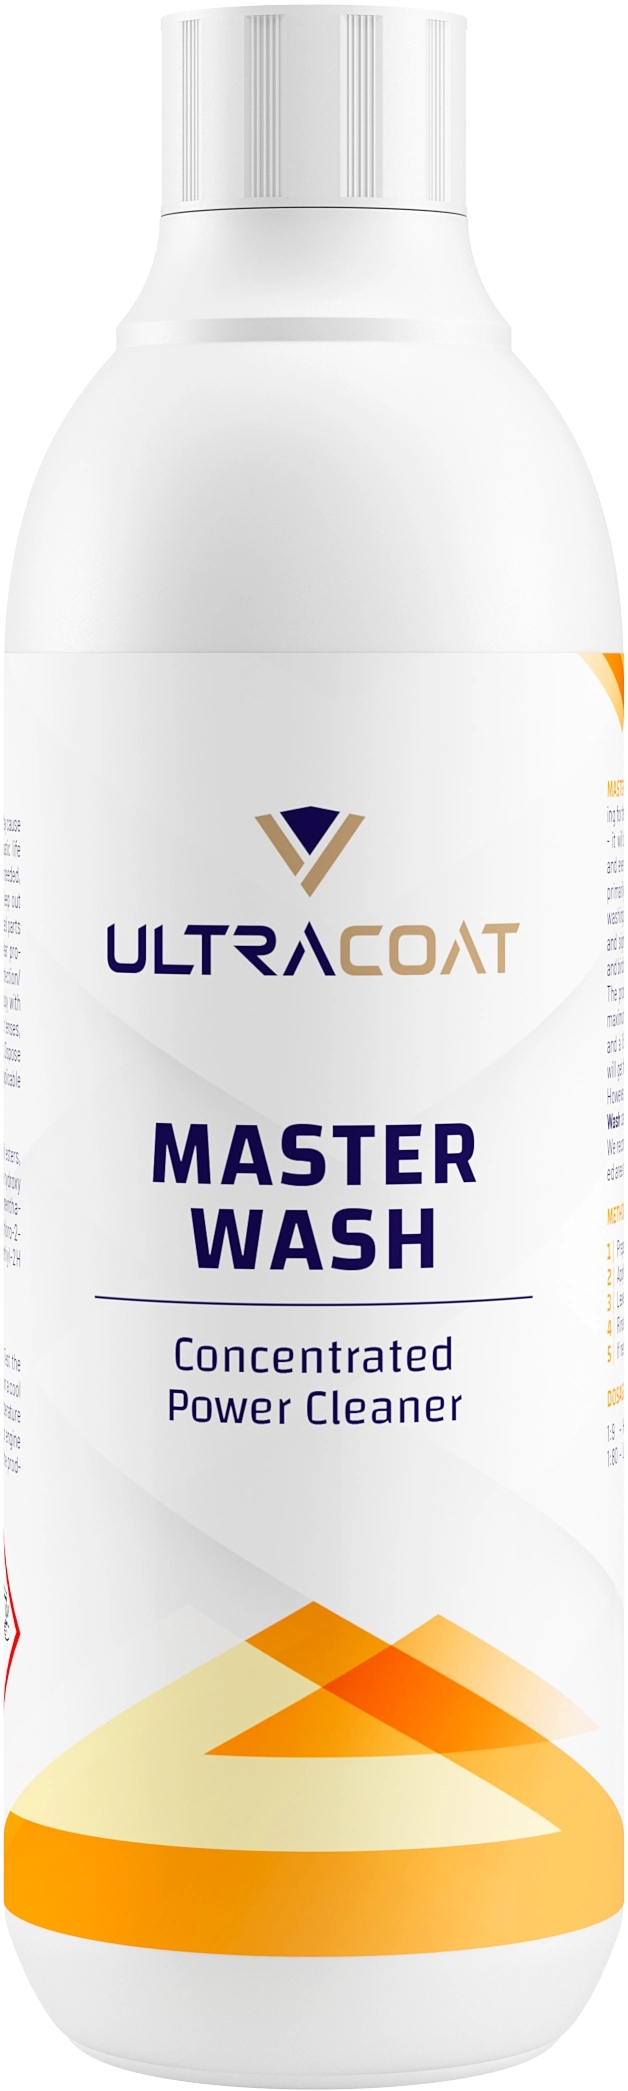 Image of Ultracoat Master Wash – preparat do mycia wstępnego, silnie skoncentrowany 500ml